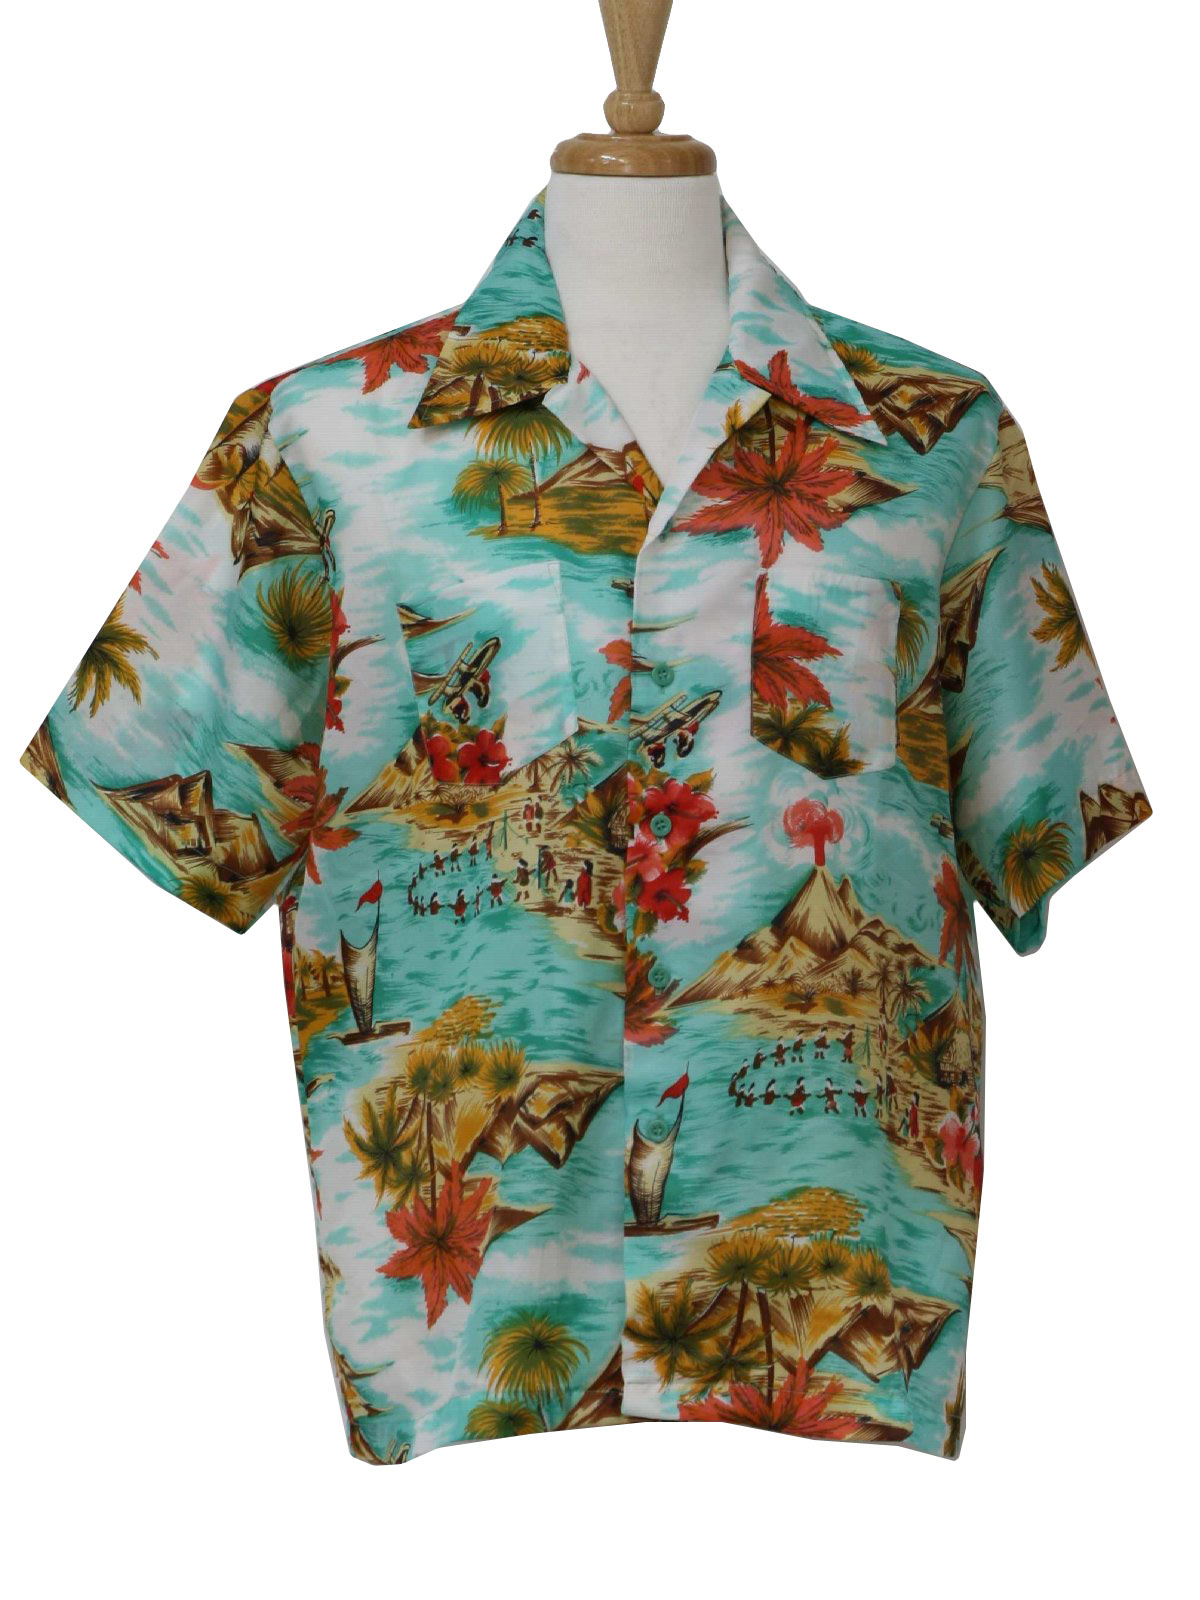 Retro 70s Hawaiian Shirt (Carlton Hill) : 70s -Carlton Hill- Mens white ...